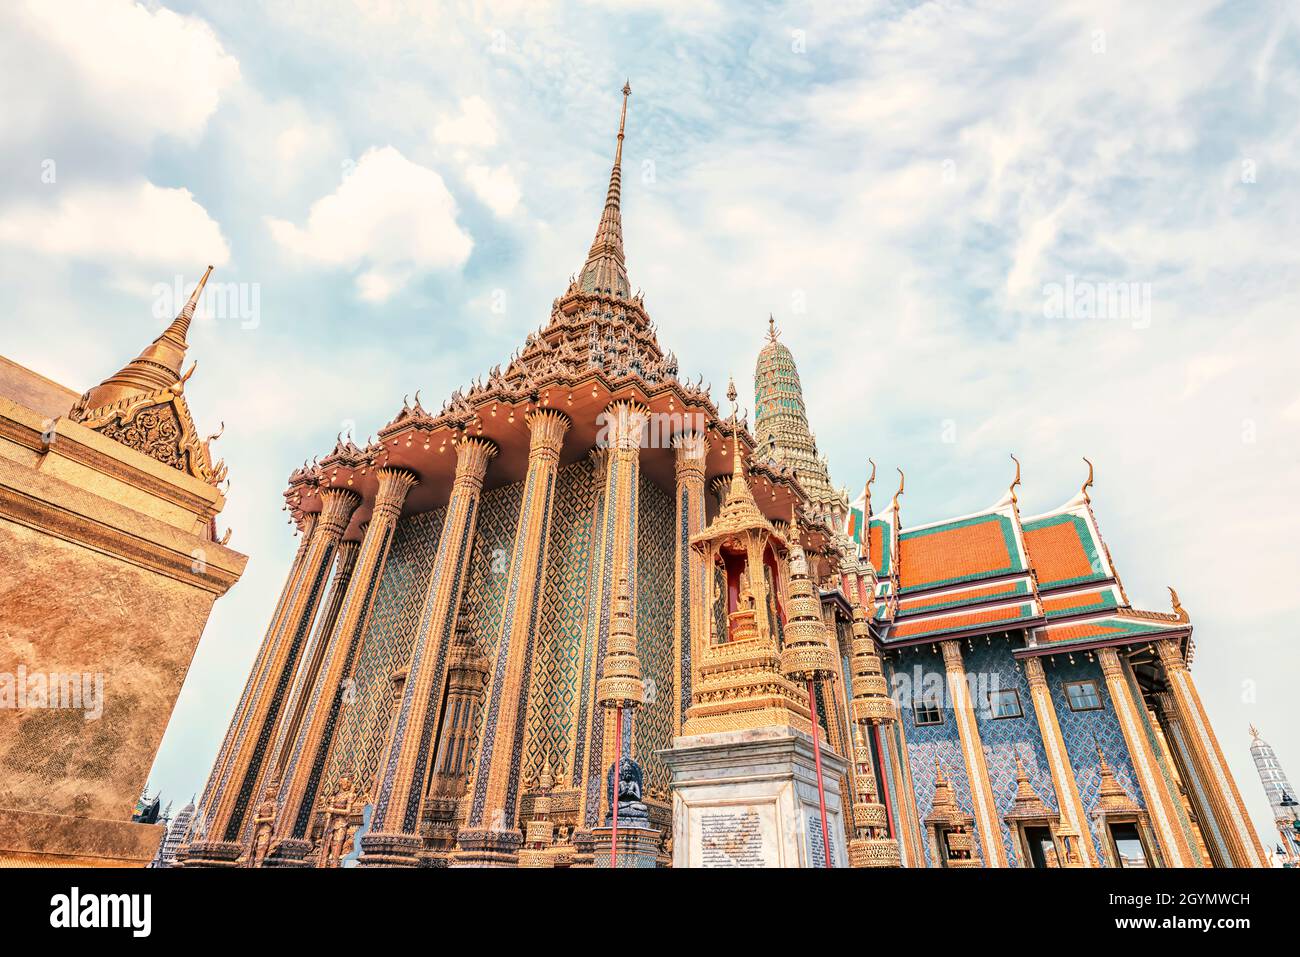 Grand Palace in Bangkok city, Thailand Stock Photo